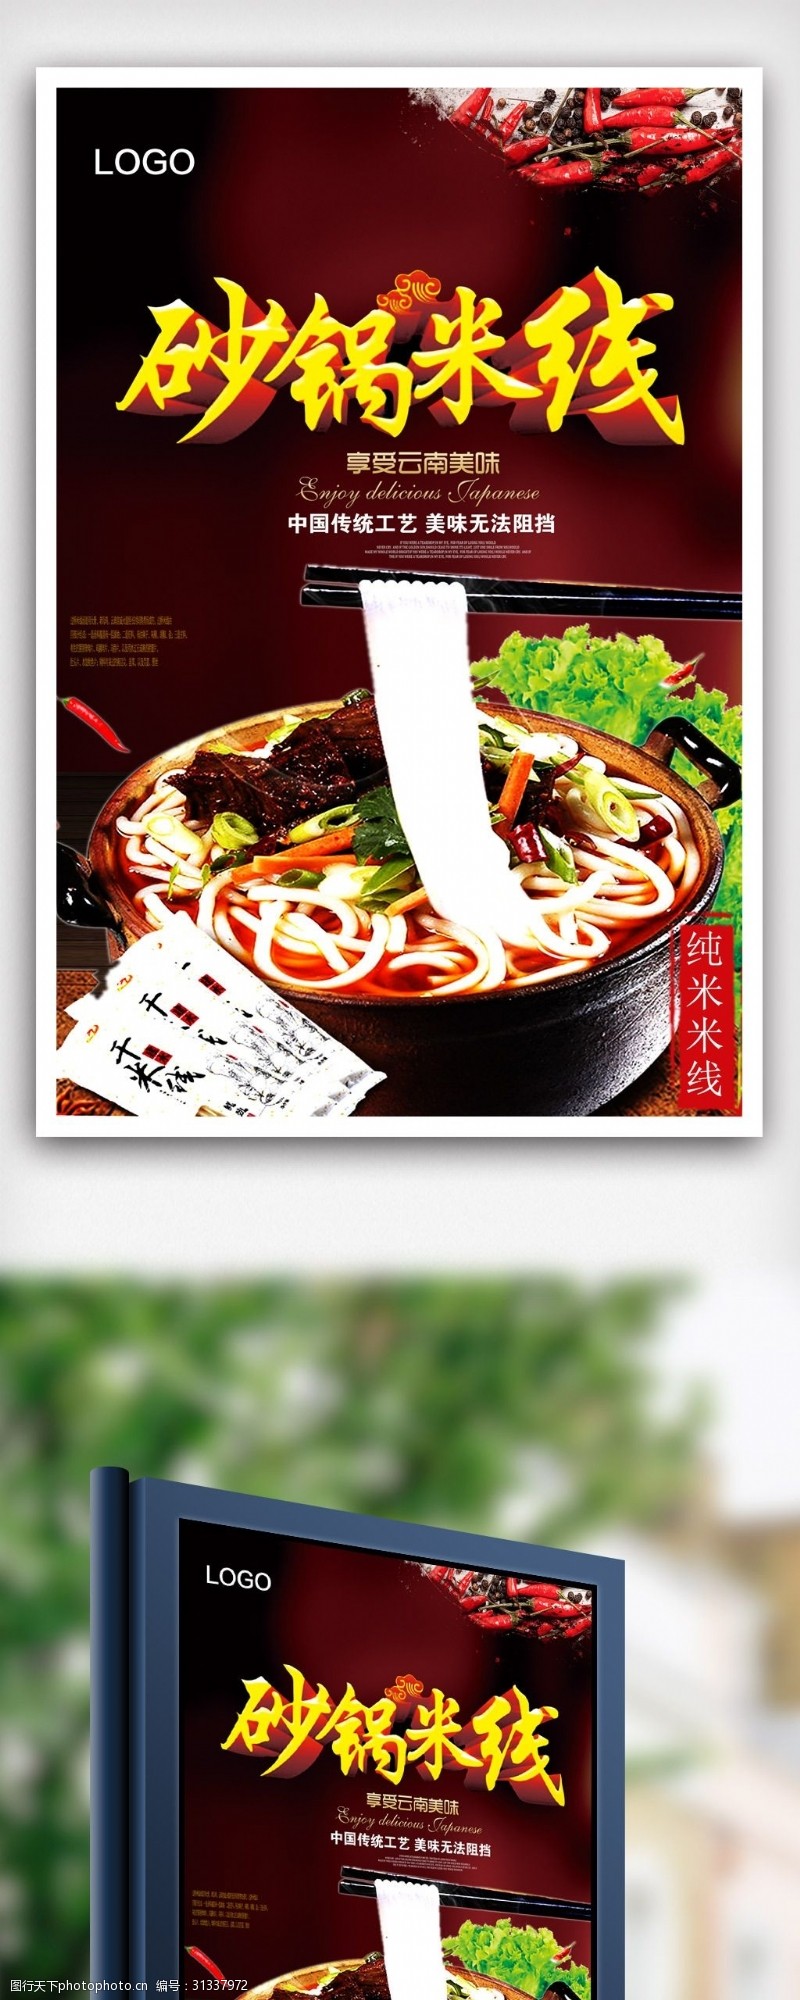 砂锅米线餐饮美食宣传海报模版.psd